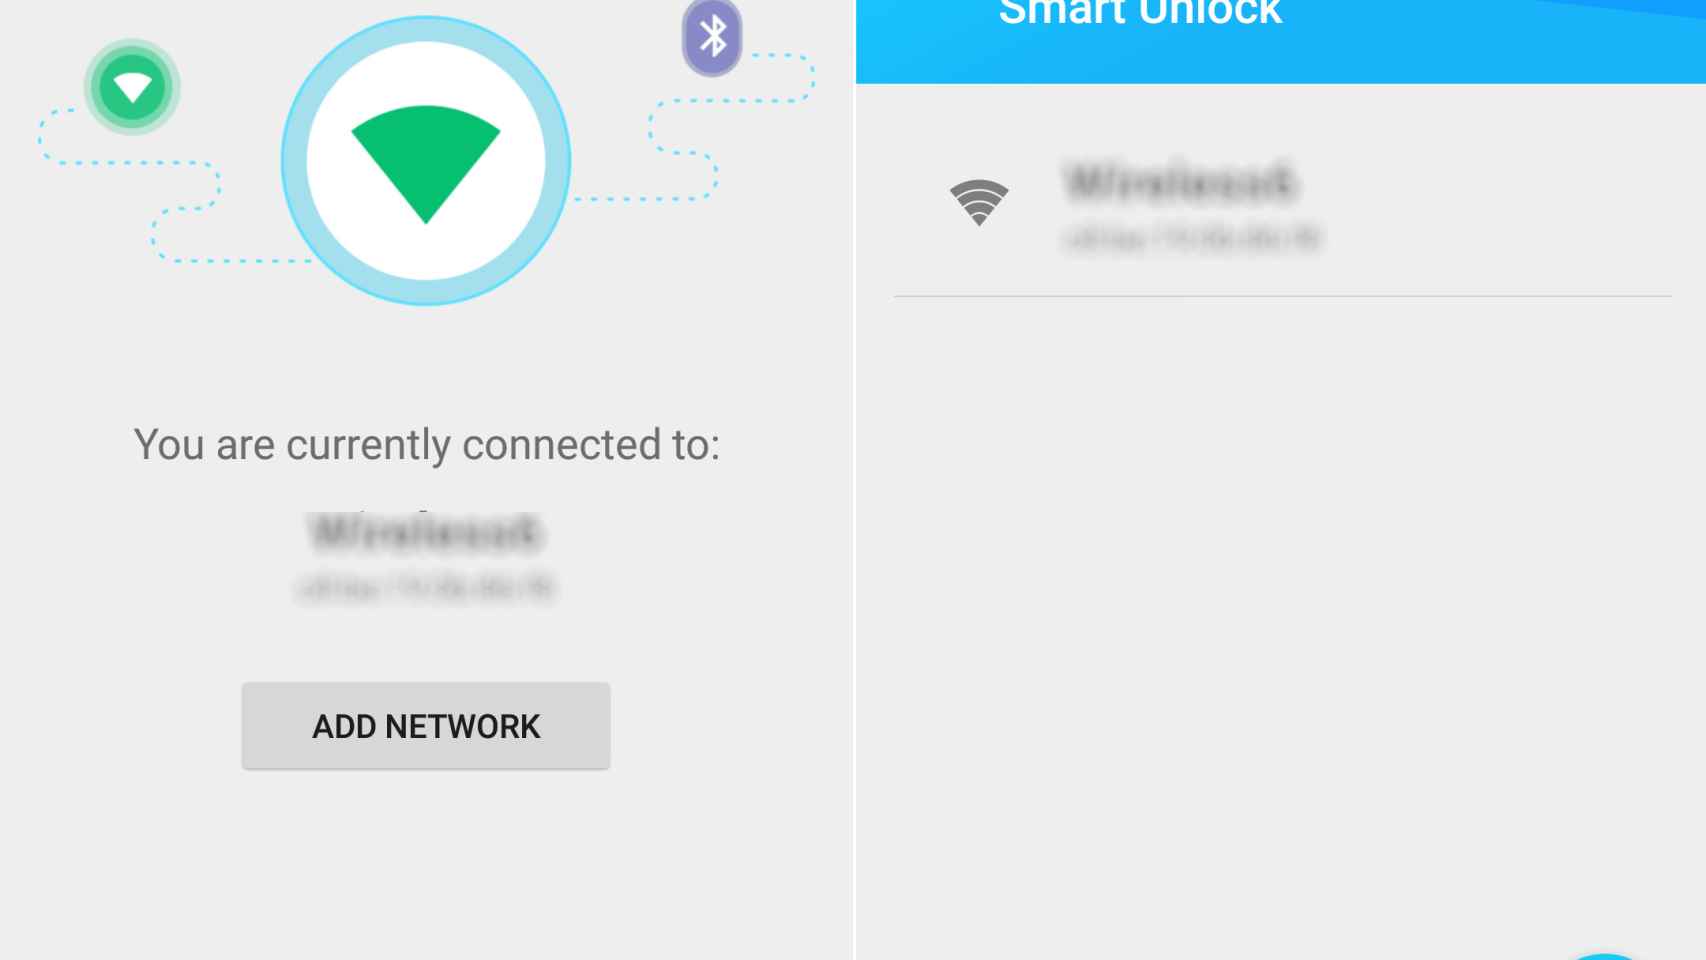 Desbloquea automáticamente tu dispositivo con el WiFi gracias a Smart Unlock